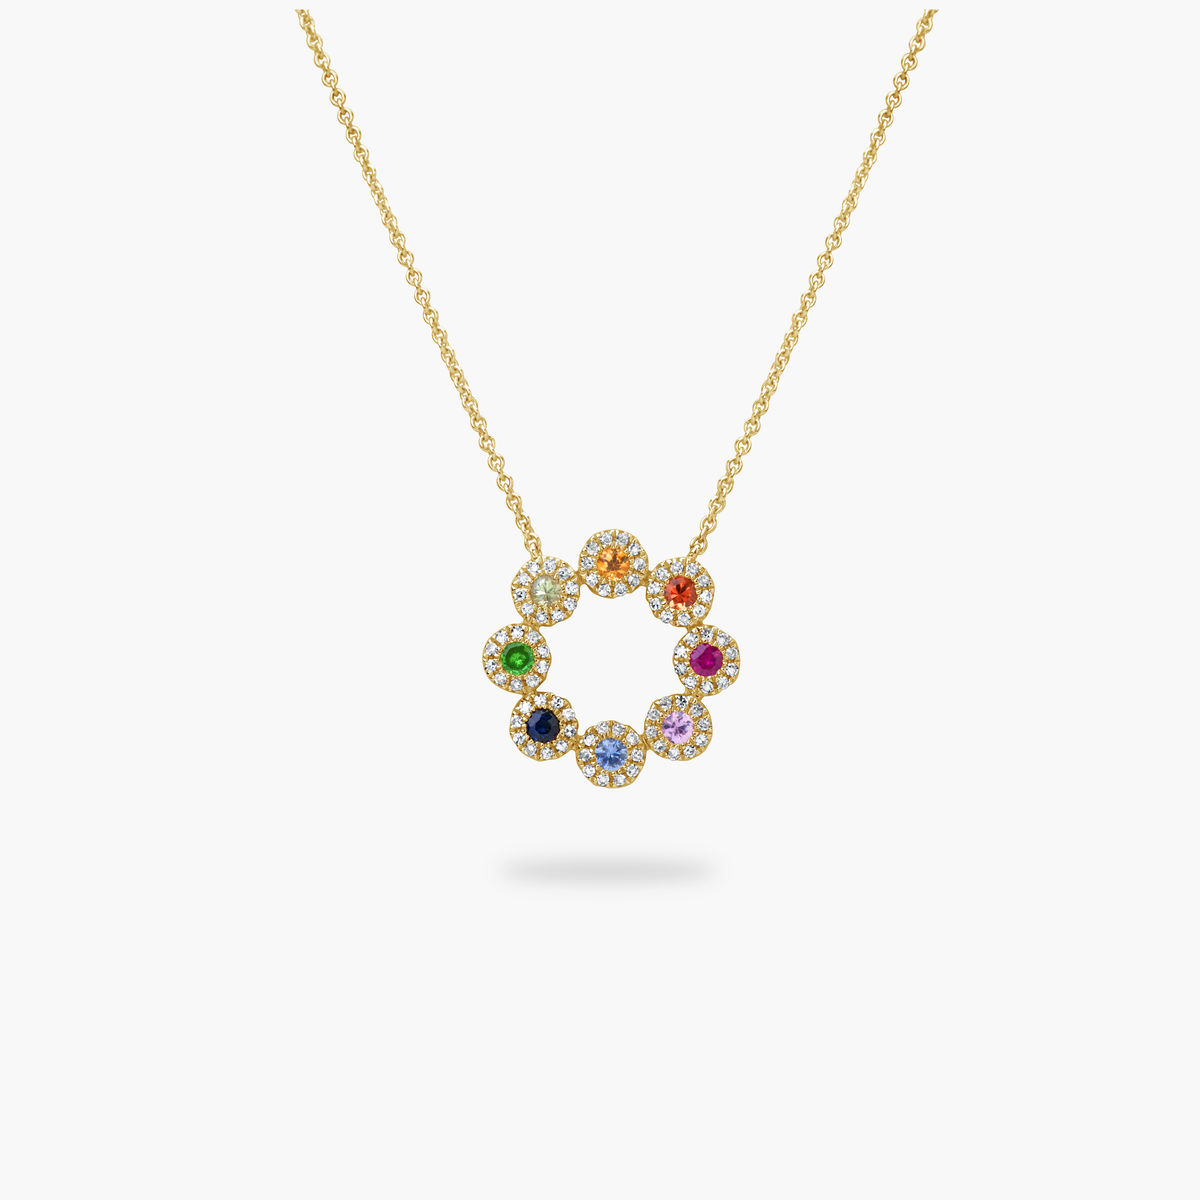 Amare Wear fine jewelry Rainbow Sapphire & Diamond Pendant Necklace Multicolor Sapphire, Tsavorite and Diamond halo open circle pendant necklace